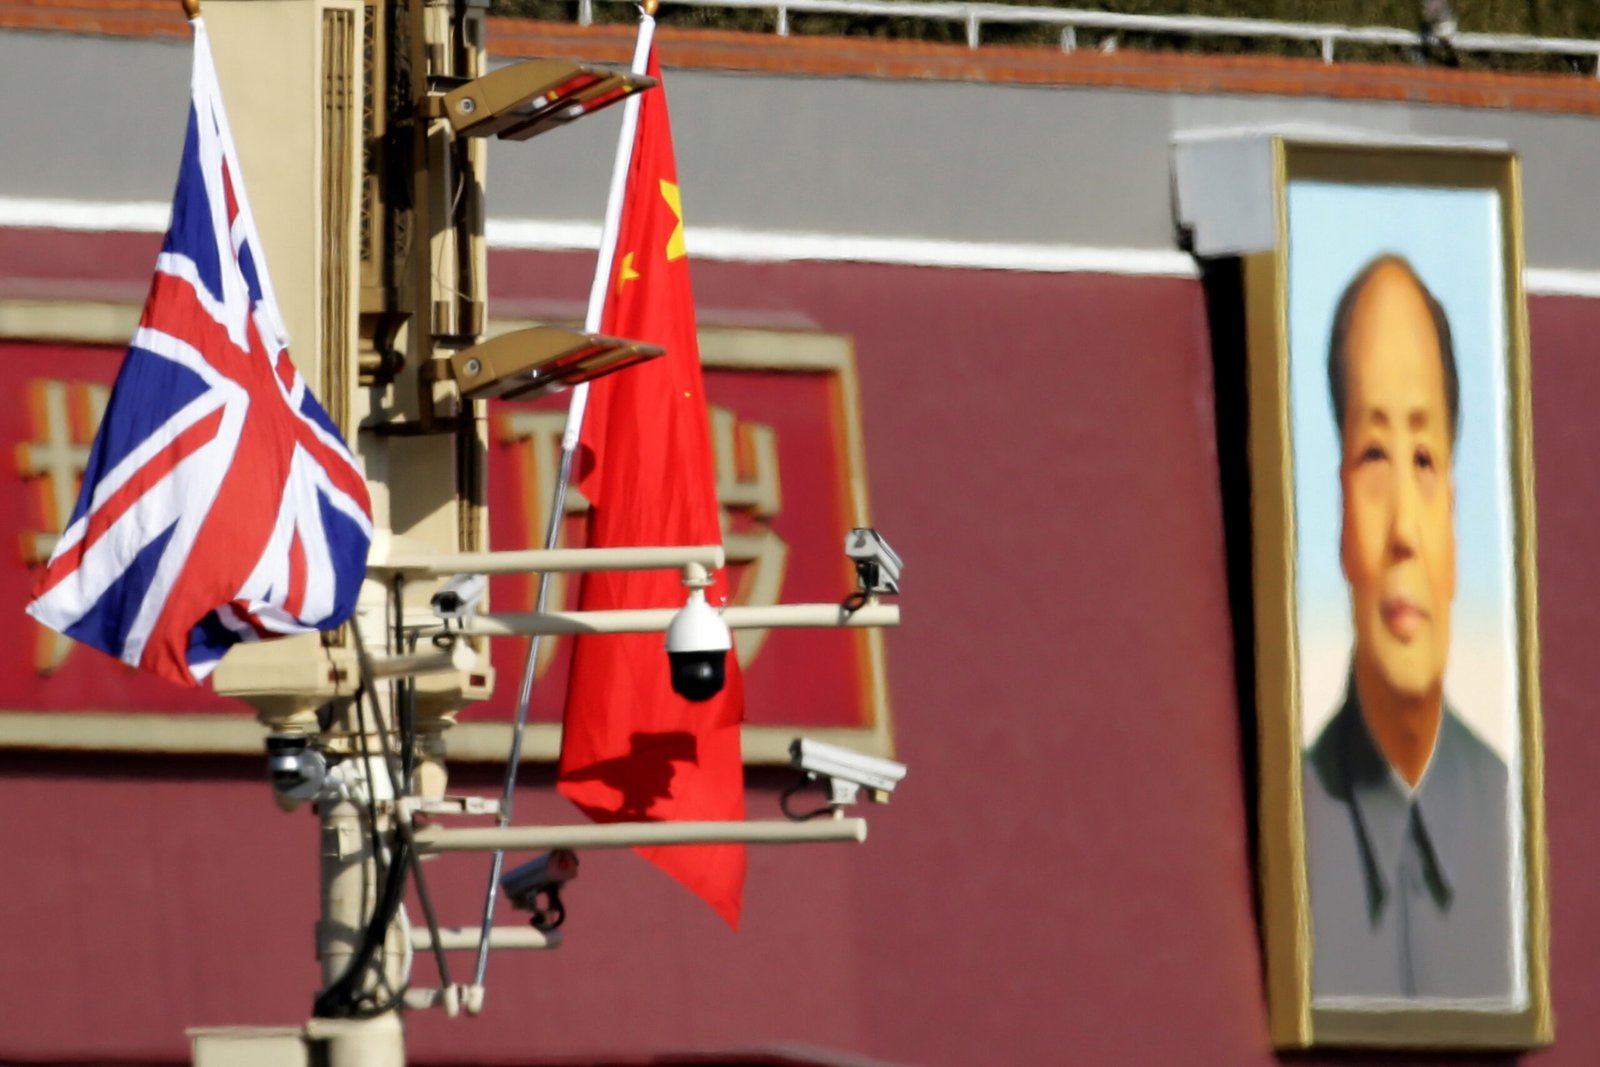 china-says-britain’s-plans-to-disrupt-hong-kong-‘doomed-to-fail’